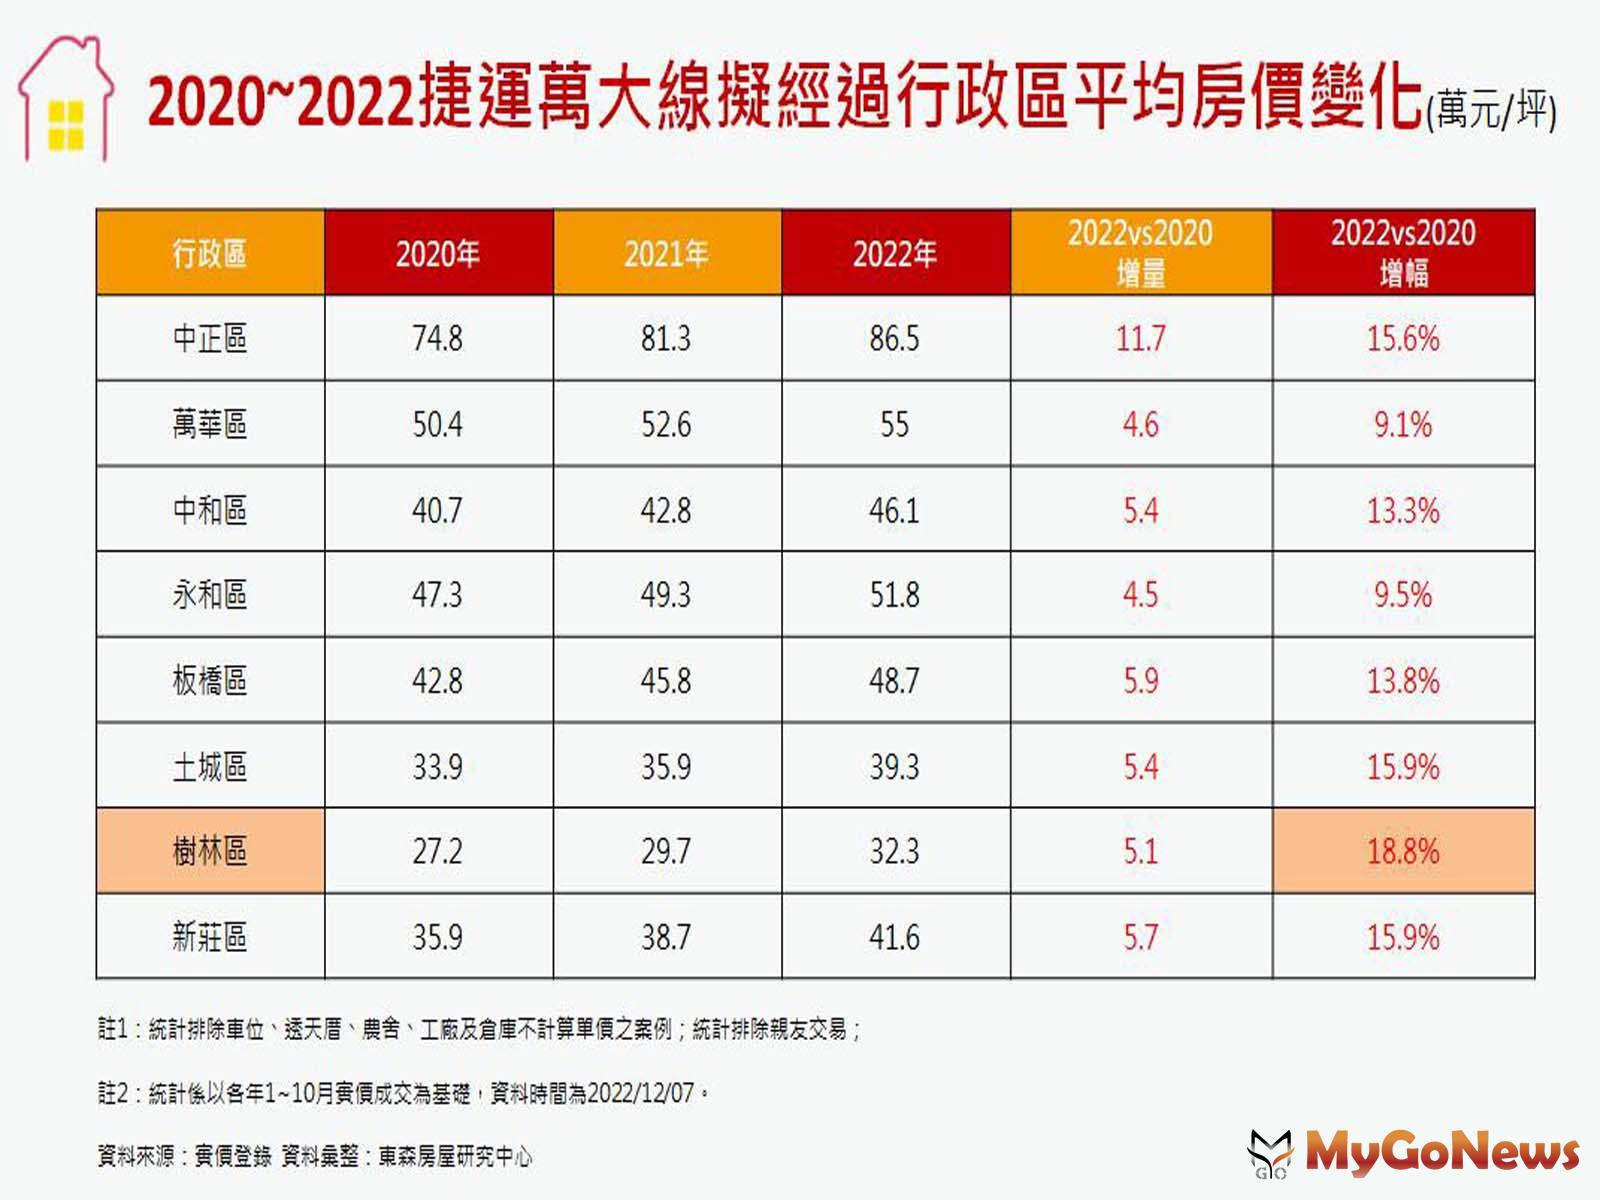 2020-2022捷運萬大線擬經過行政區平均房價變化 MyGoNews房地產新聞 市場快訊